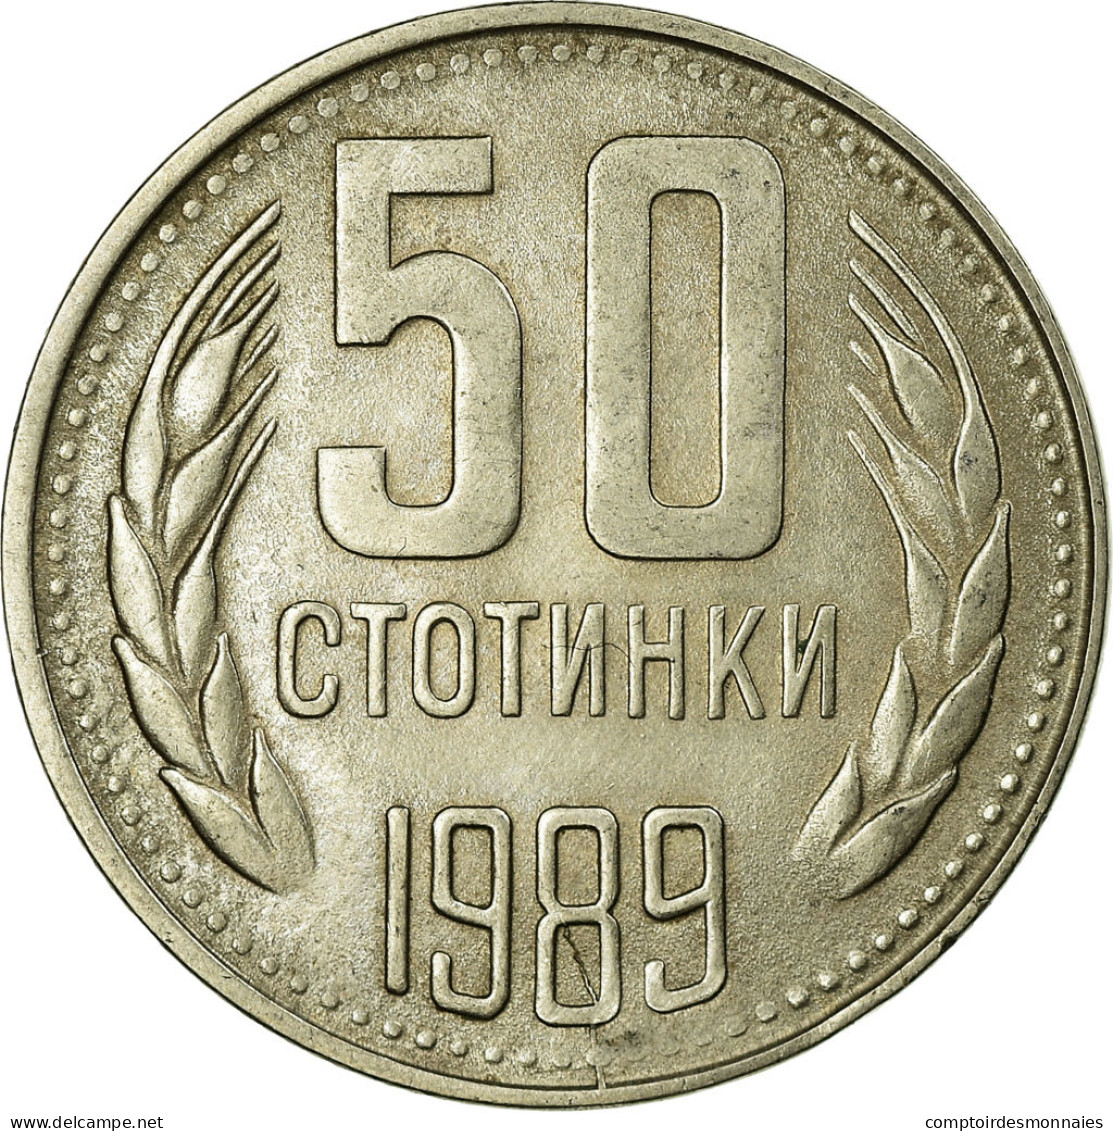 Monnaie, Bulgarie, 50 Stotinki, 1989, TTB, Nickel-brass, KM:89 - Bulgarie